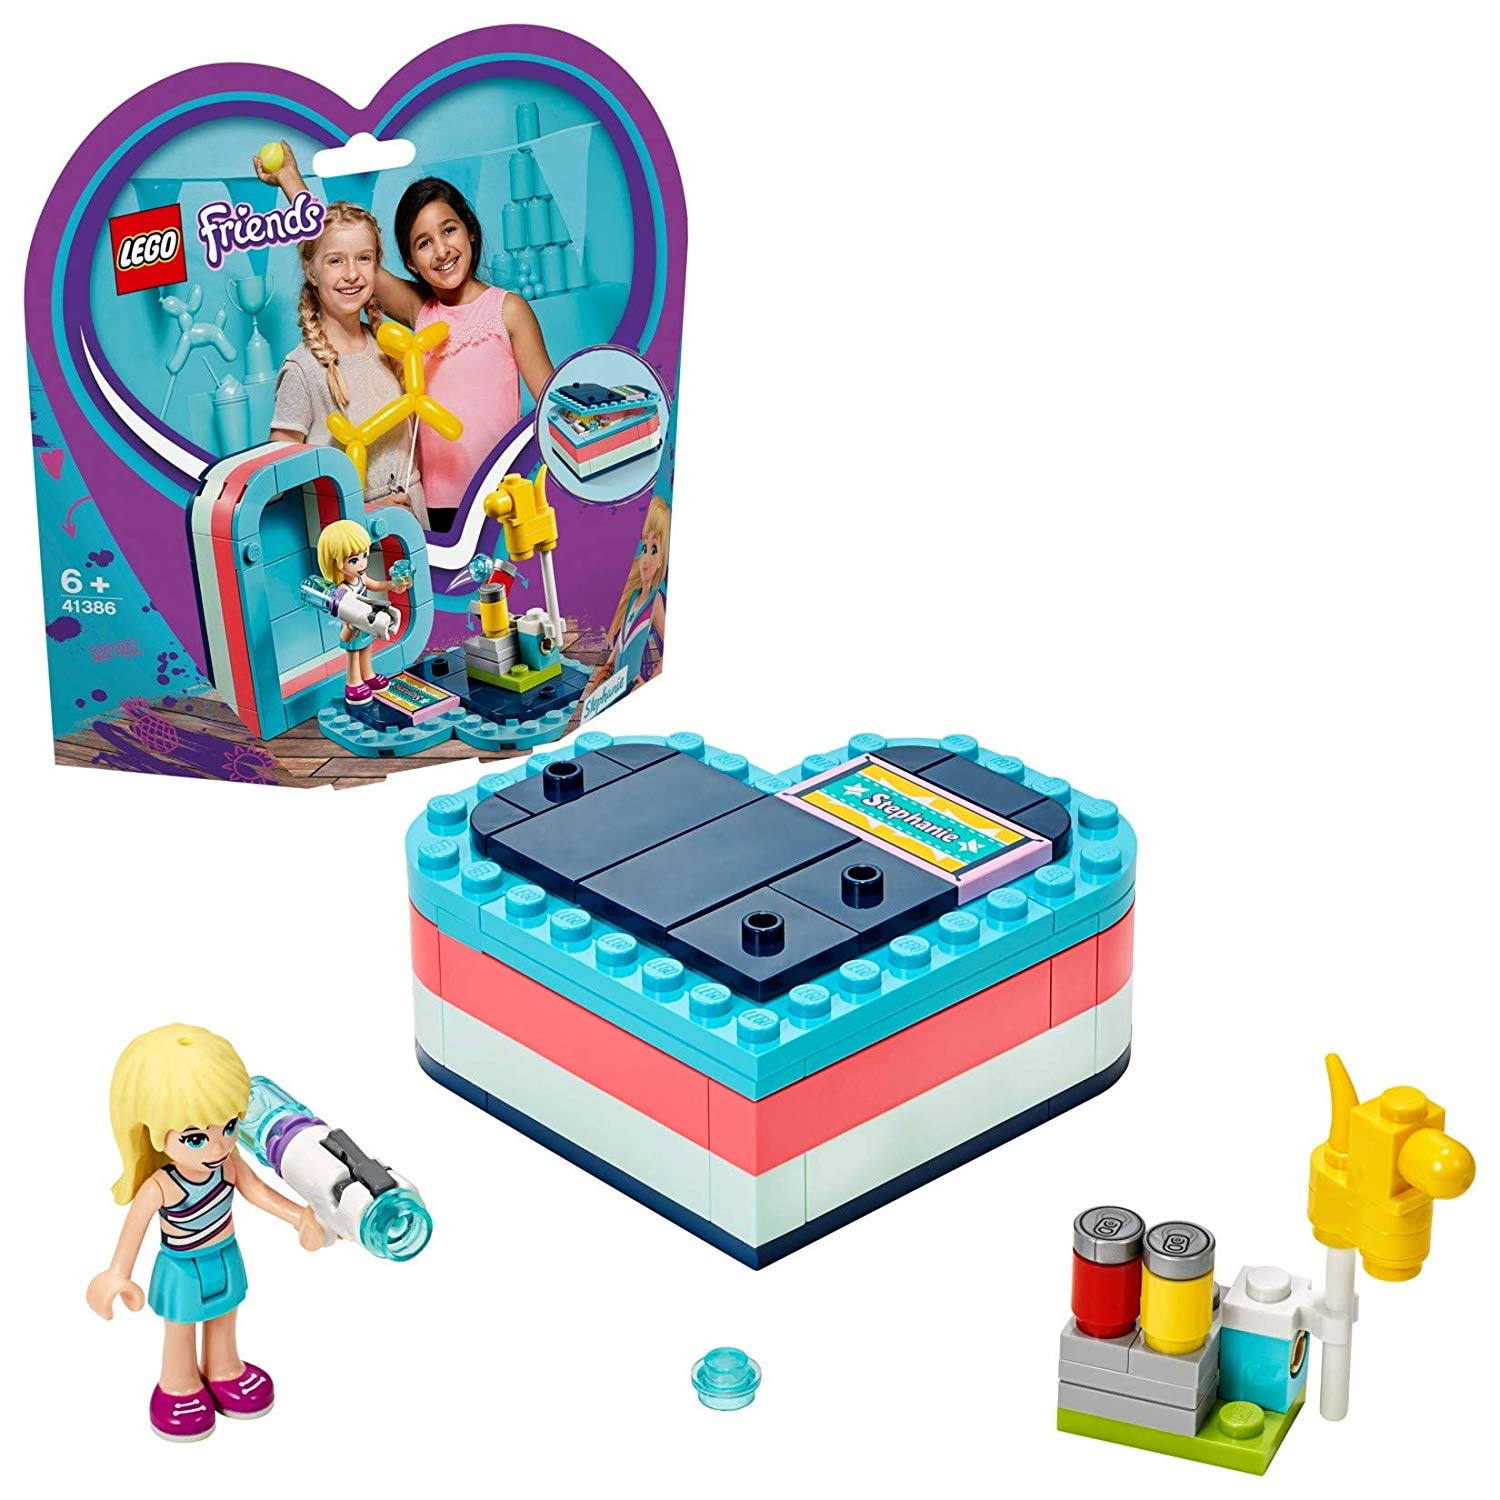 Lego Friends 41386 Stephanies Summer Heart Box, Construction Set